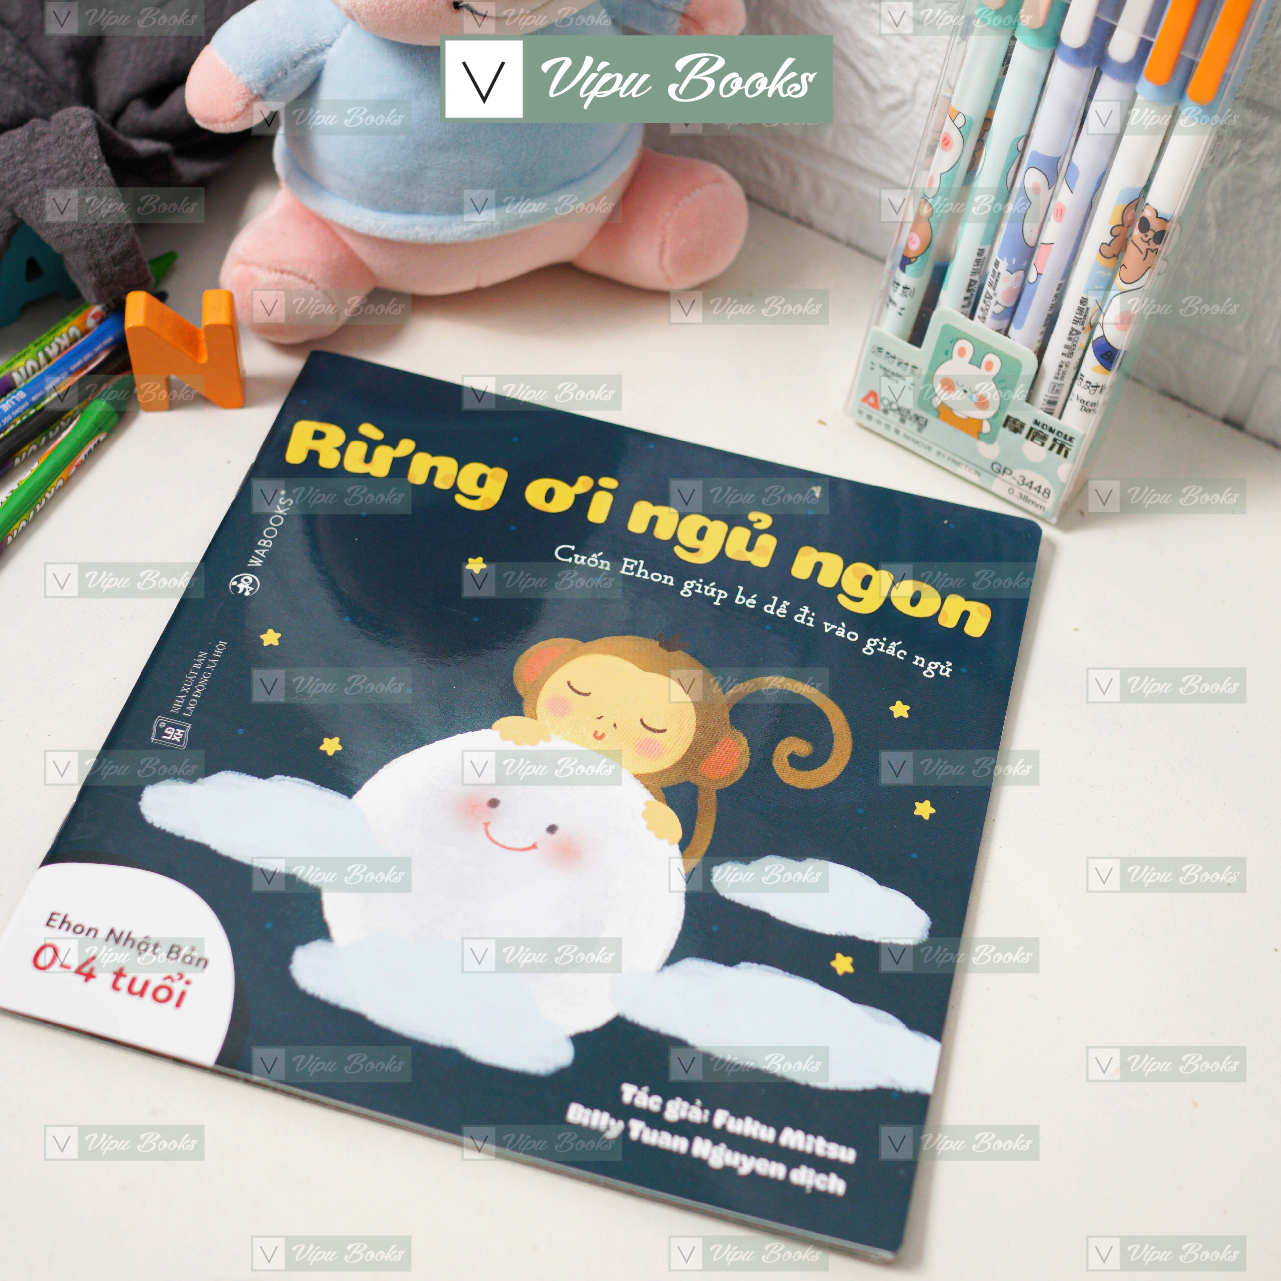 Sách - Ehon Nhật Bản - Bộ 3 Quyển Buồn Ngủ Ơi Là Buồn Ngủ - Dành Cho Bé Từ 0-4 Tuổi - Giúp Bé Dễ Đi Vào Giấc Ngủ